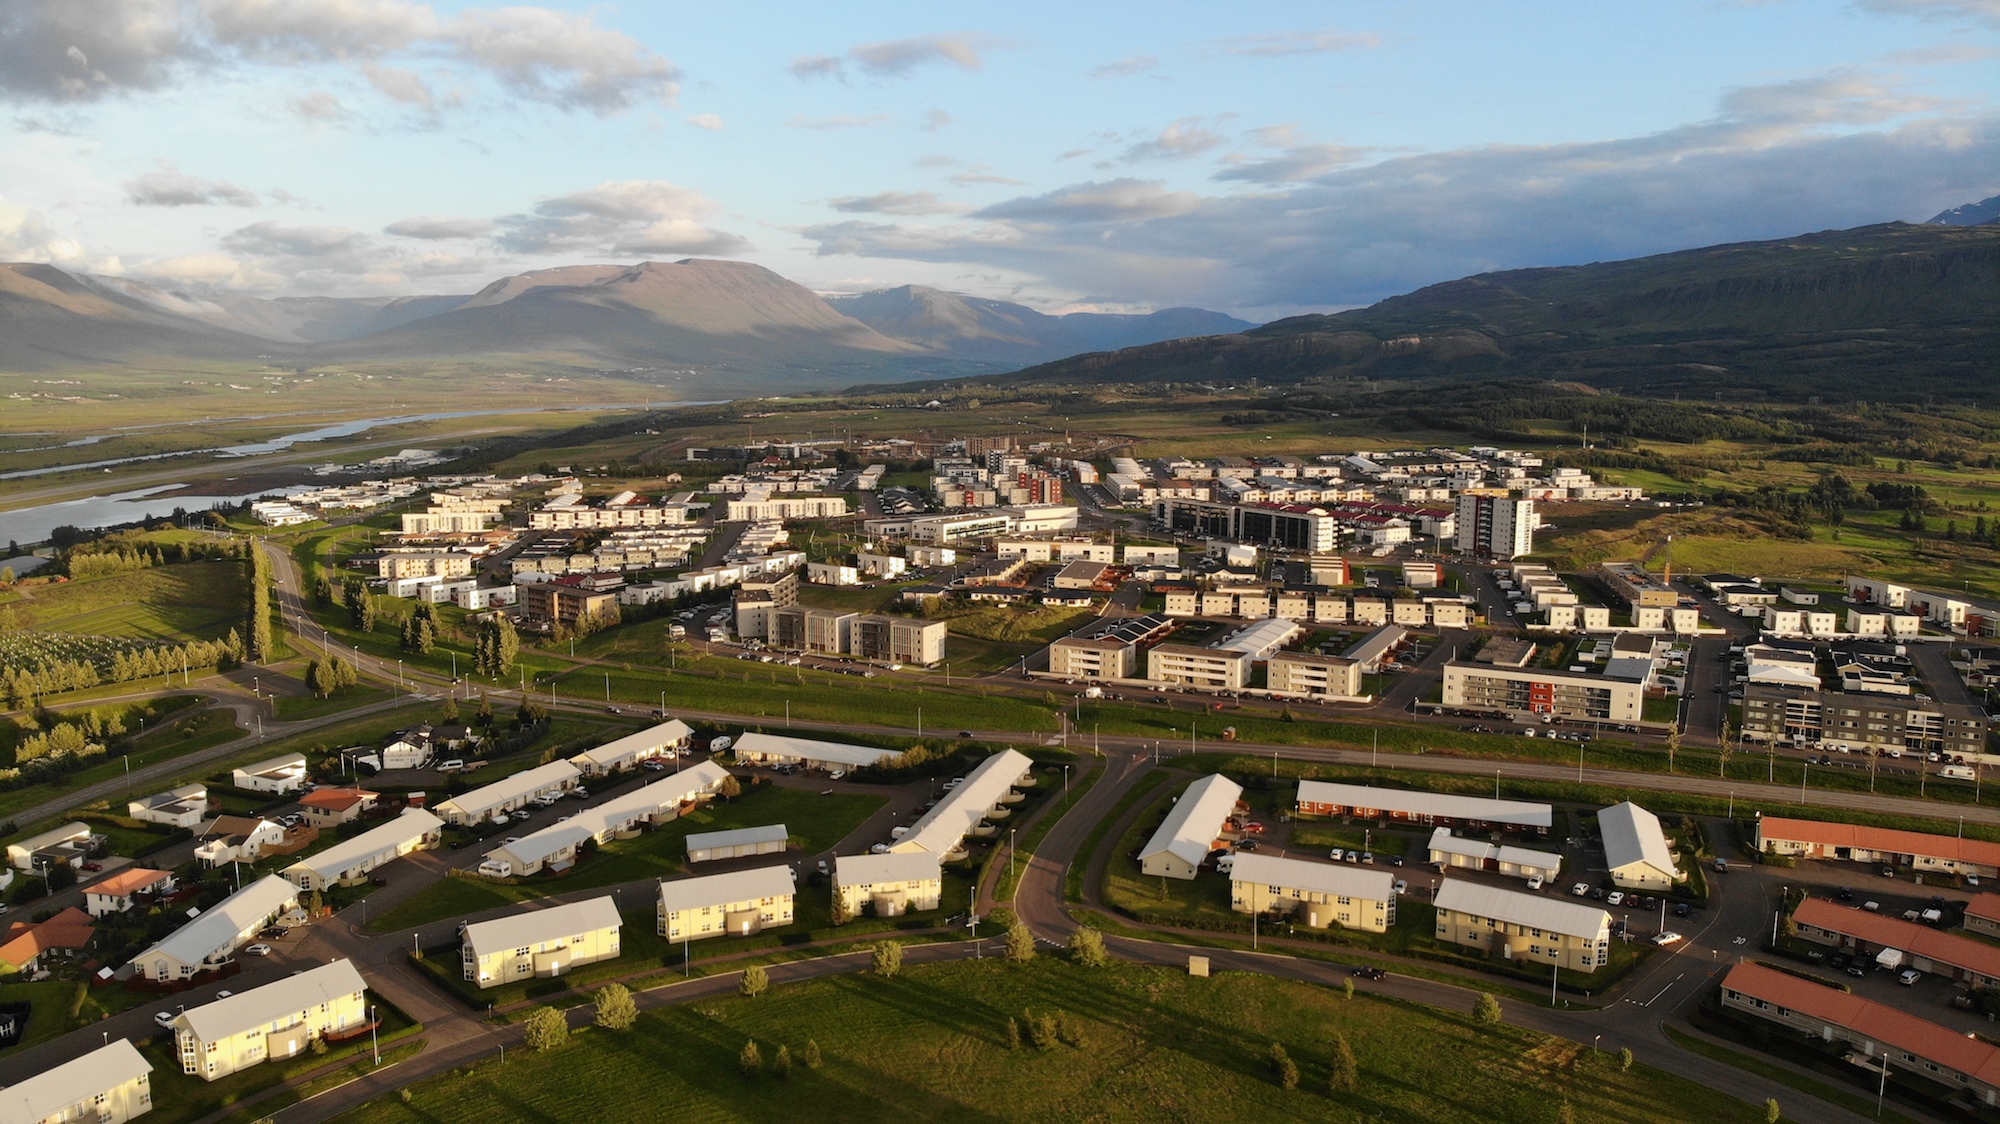 Hver eru bestu hverfi Akureyrar?